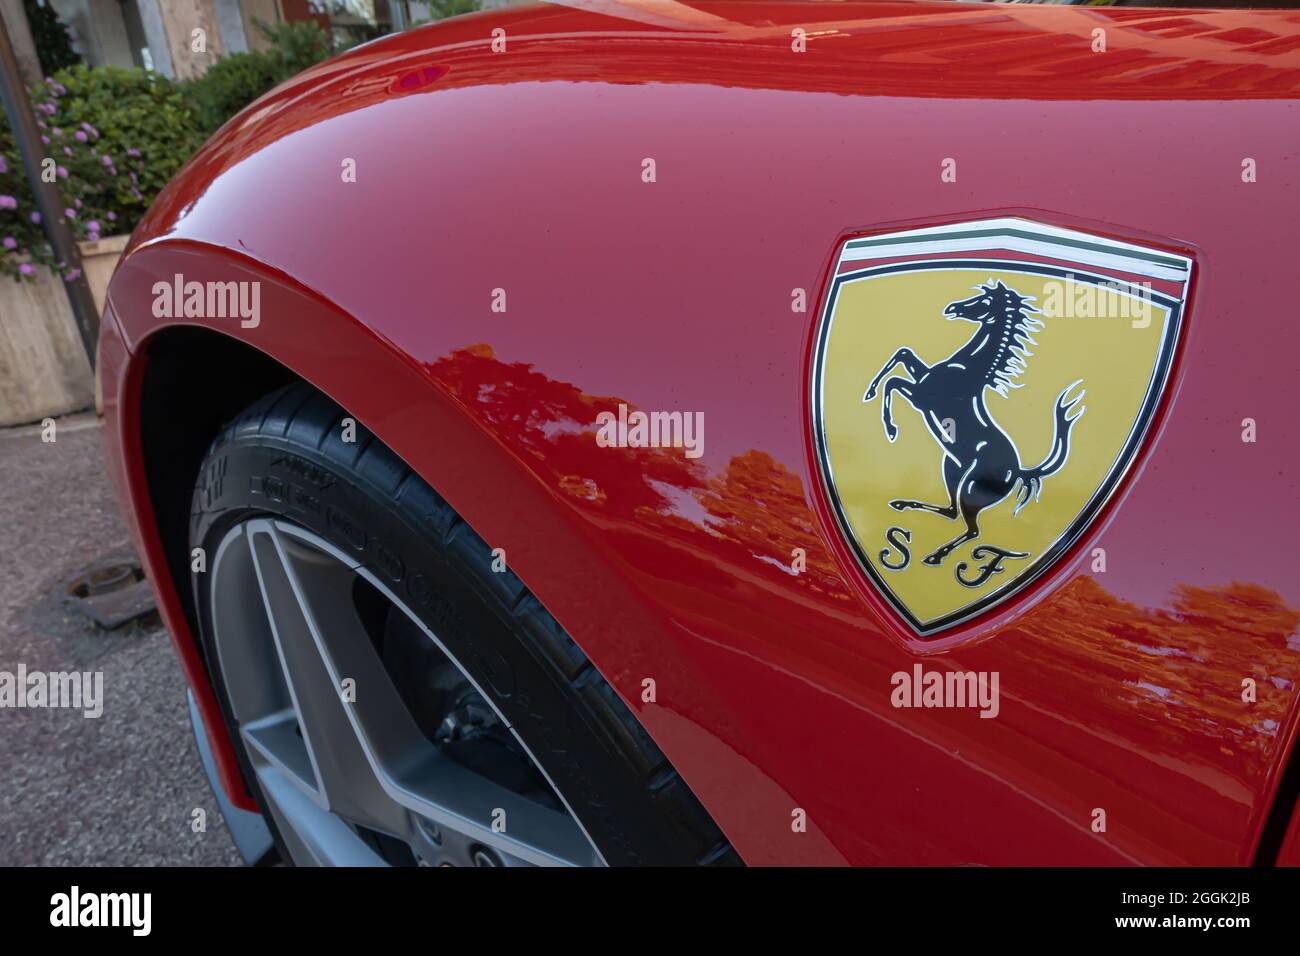 Monte Carlo, Monaco - 4 juillet 2020 : détail d'une Ferrari rouge - voiture de sport italienne Banque D'Images